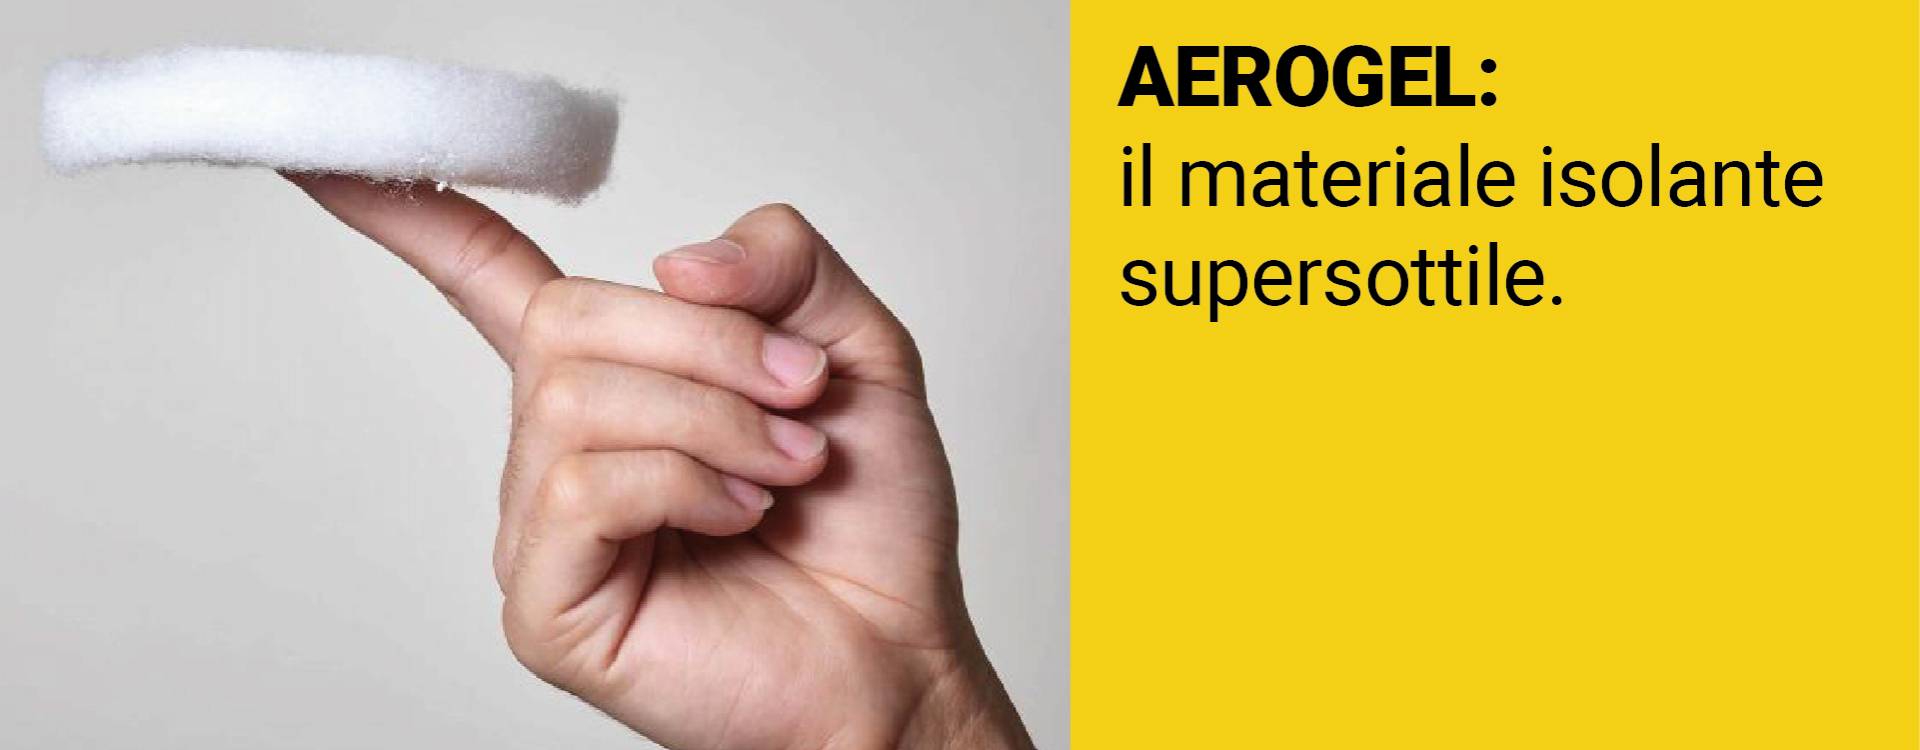 AEROGEL: Il materiale isolante supersottile